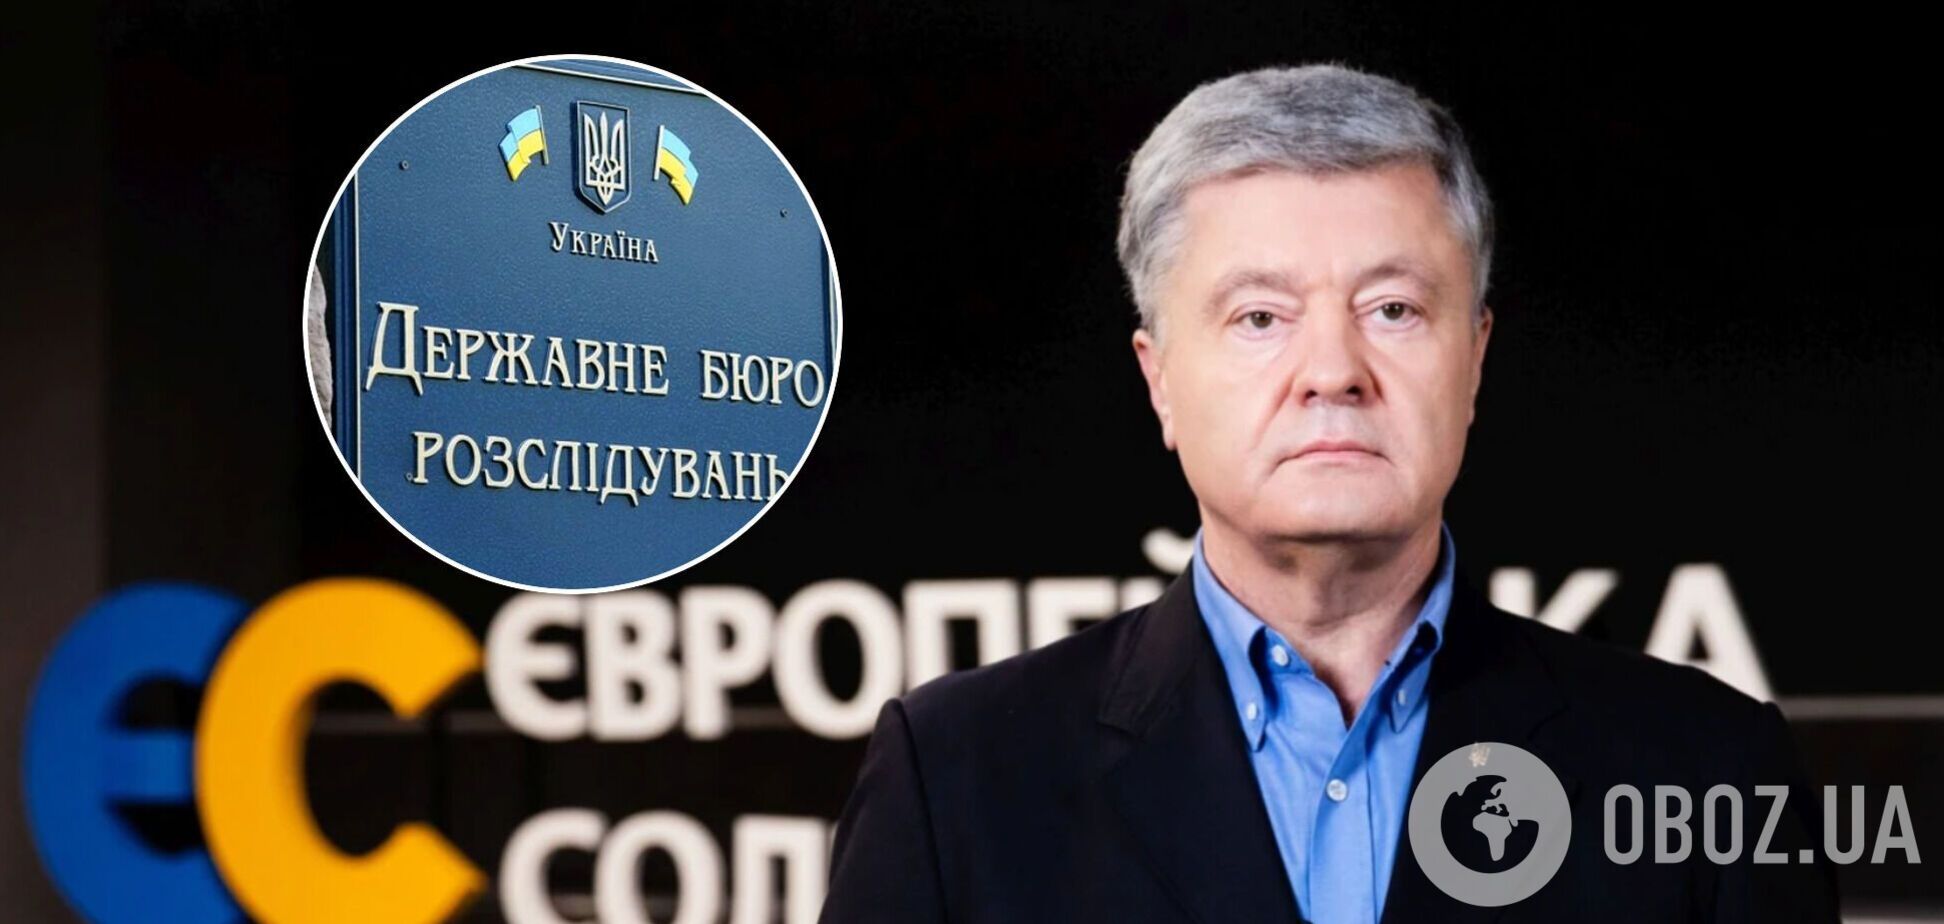 'Це відверта брехня': адвокат Порошенка відреагував на заяву ДБР щодо активів '5 каналу' і 'Прямого'